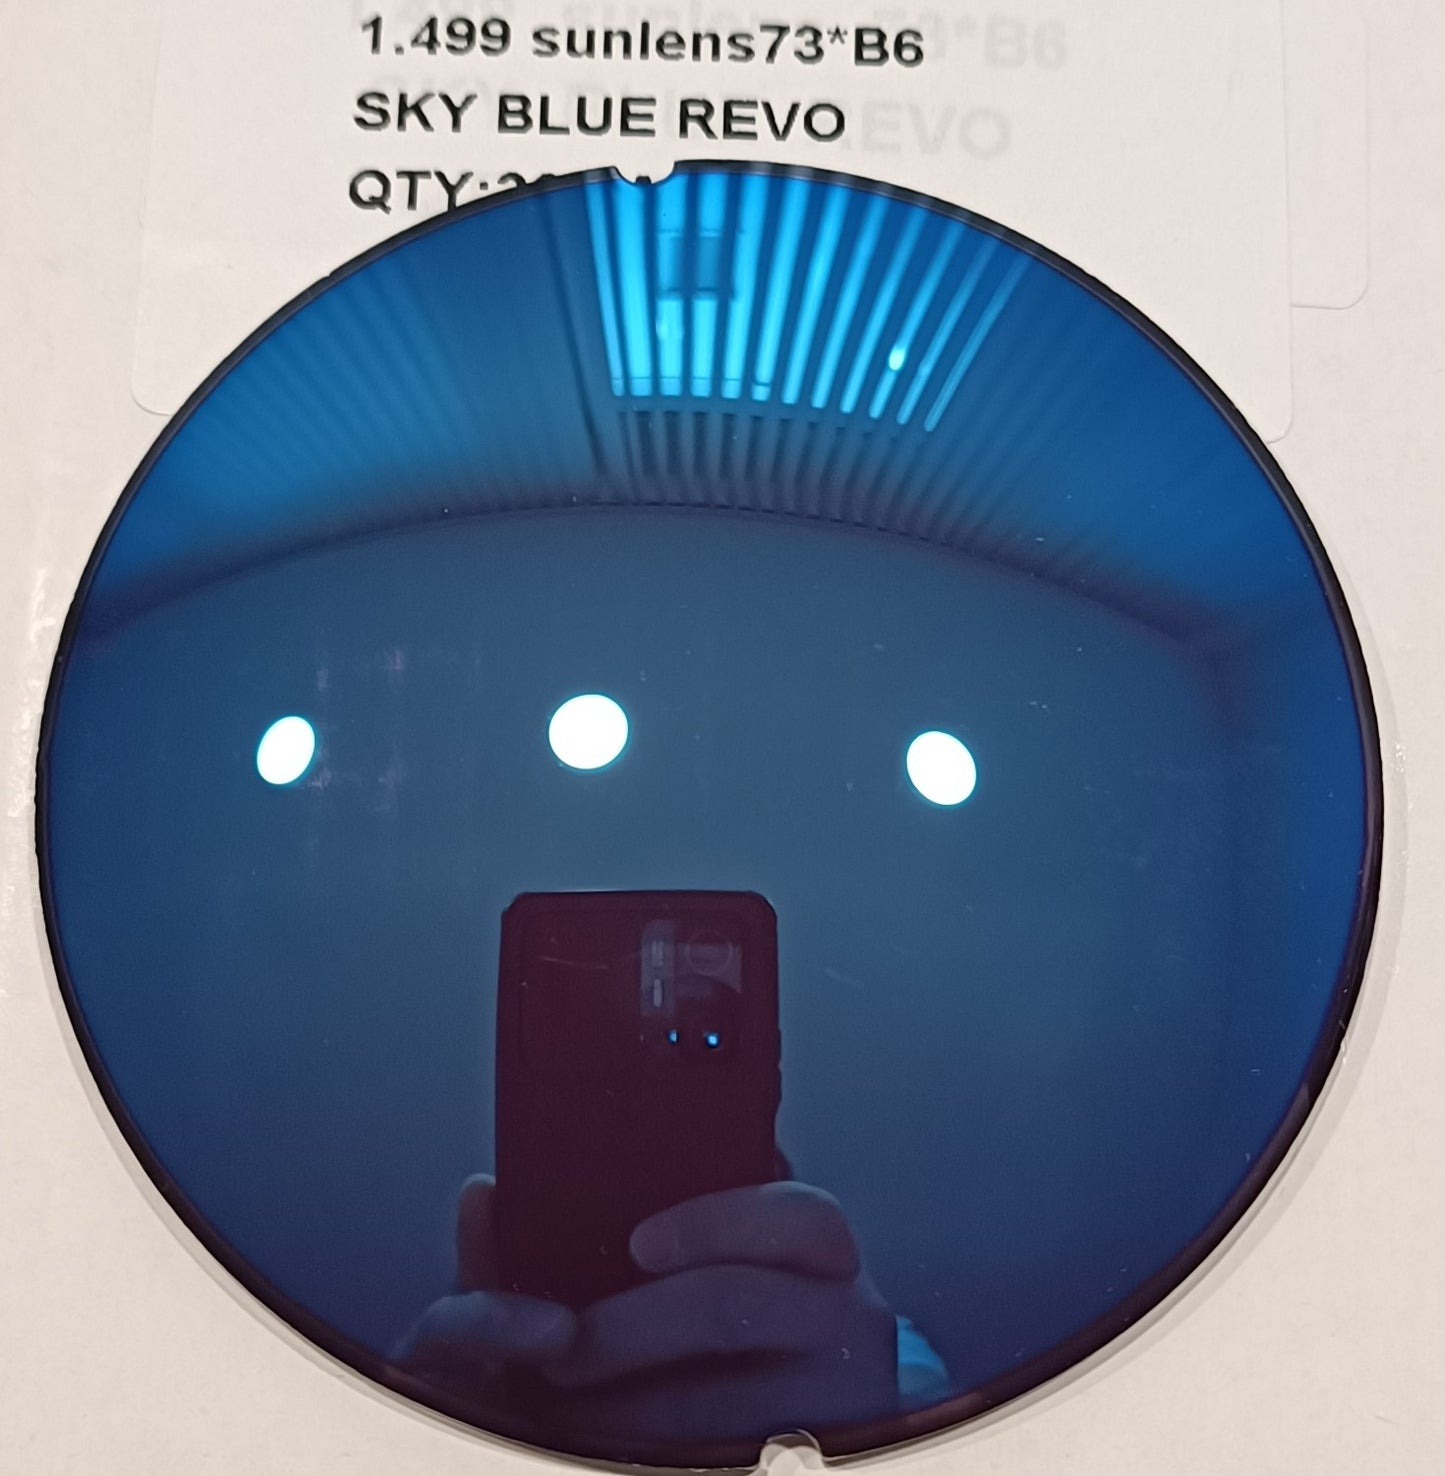 Grinding into full-rim glasses: Sky Blue Mirrored 